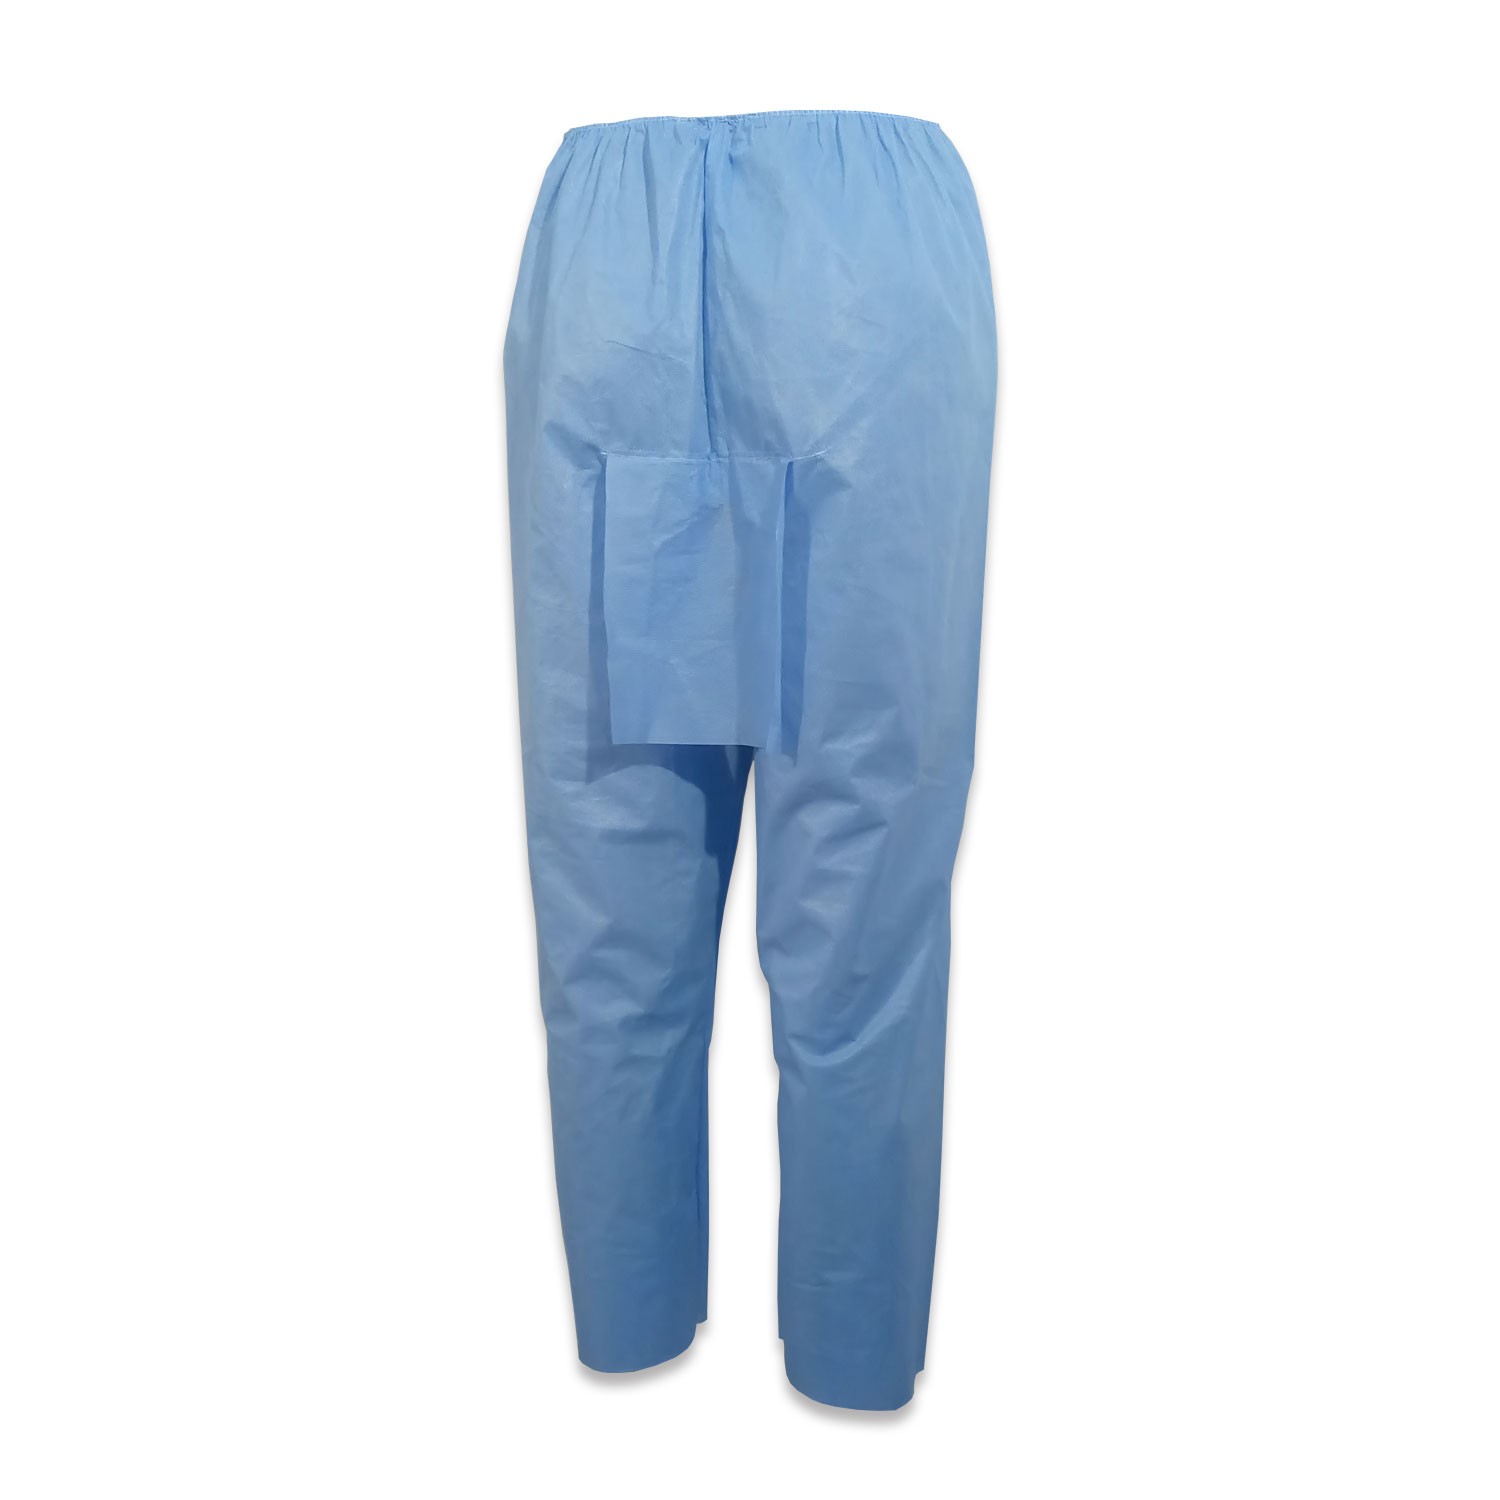 Colonoscopy Pants Sms Blue Xlarge